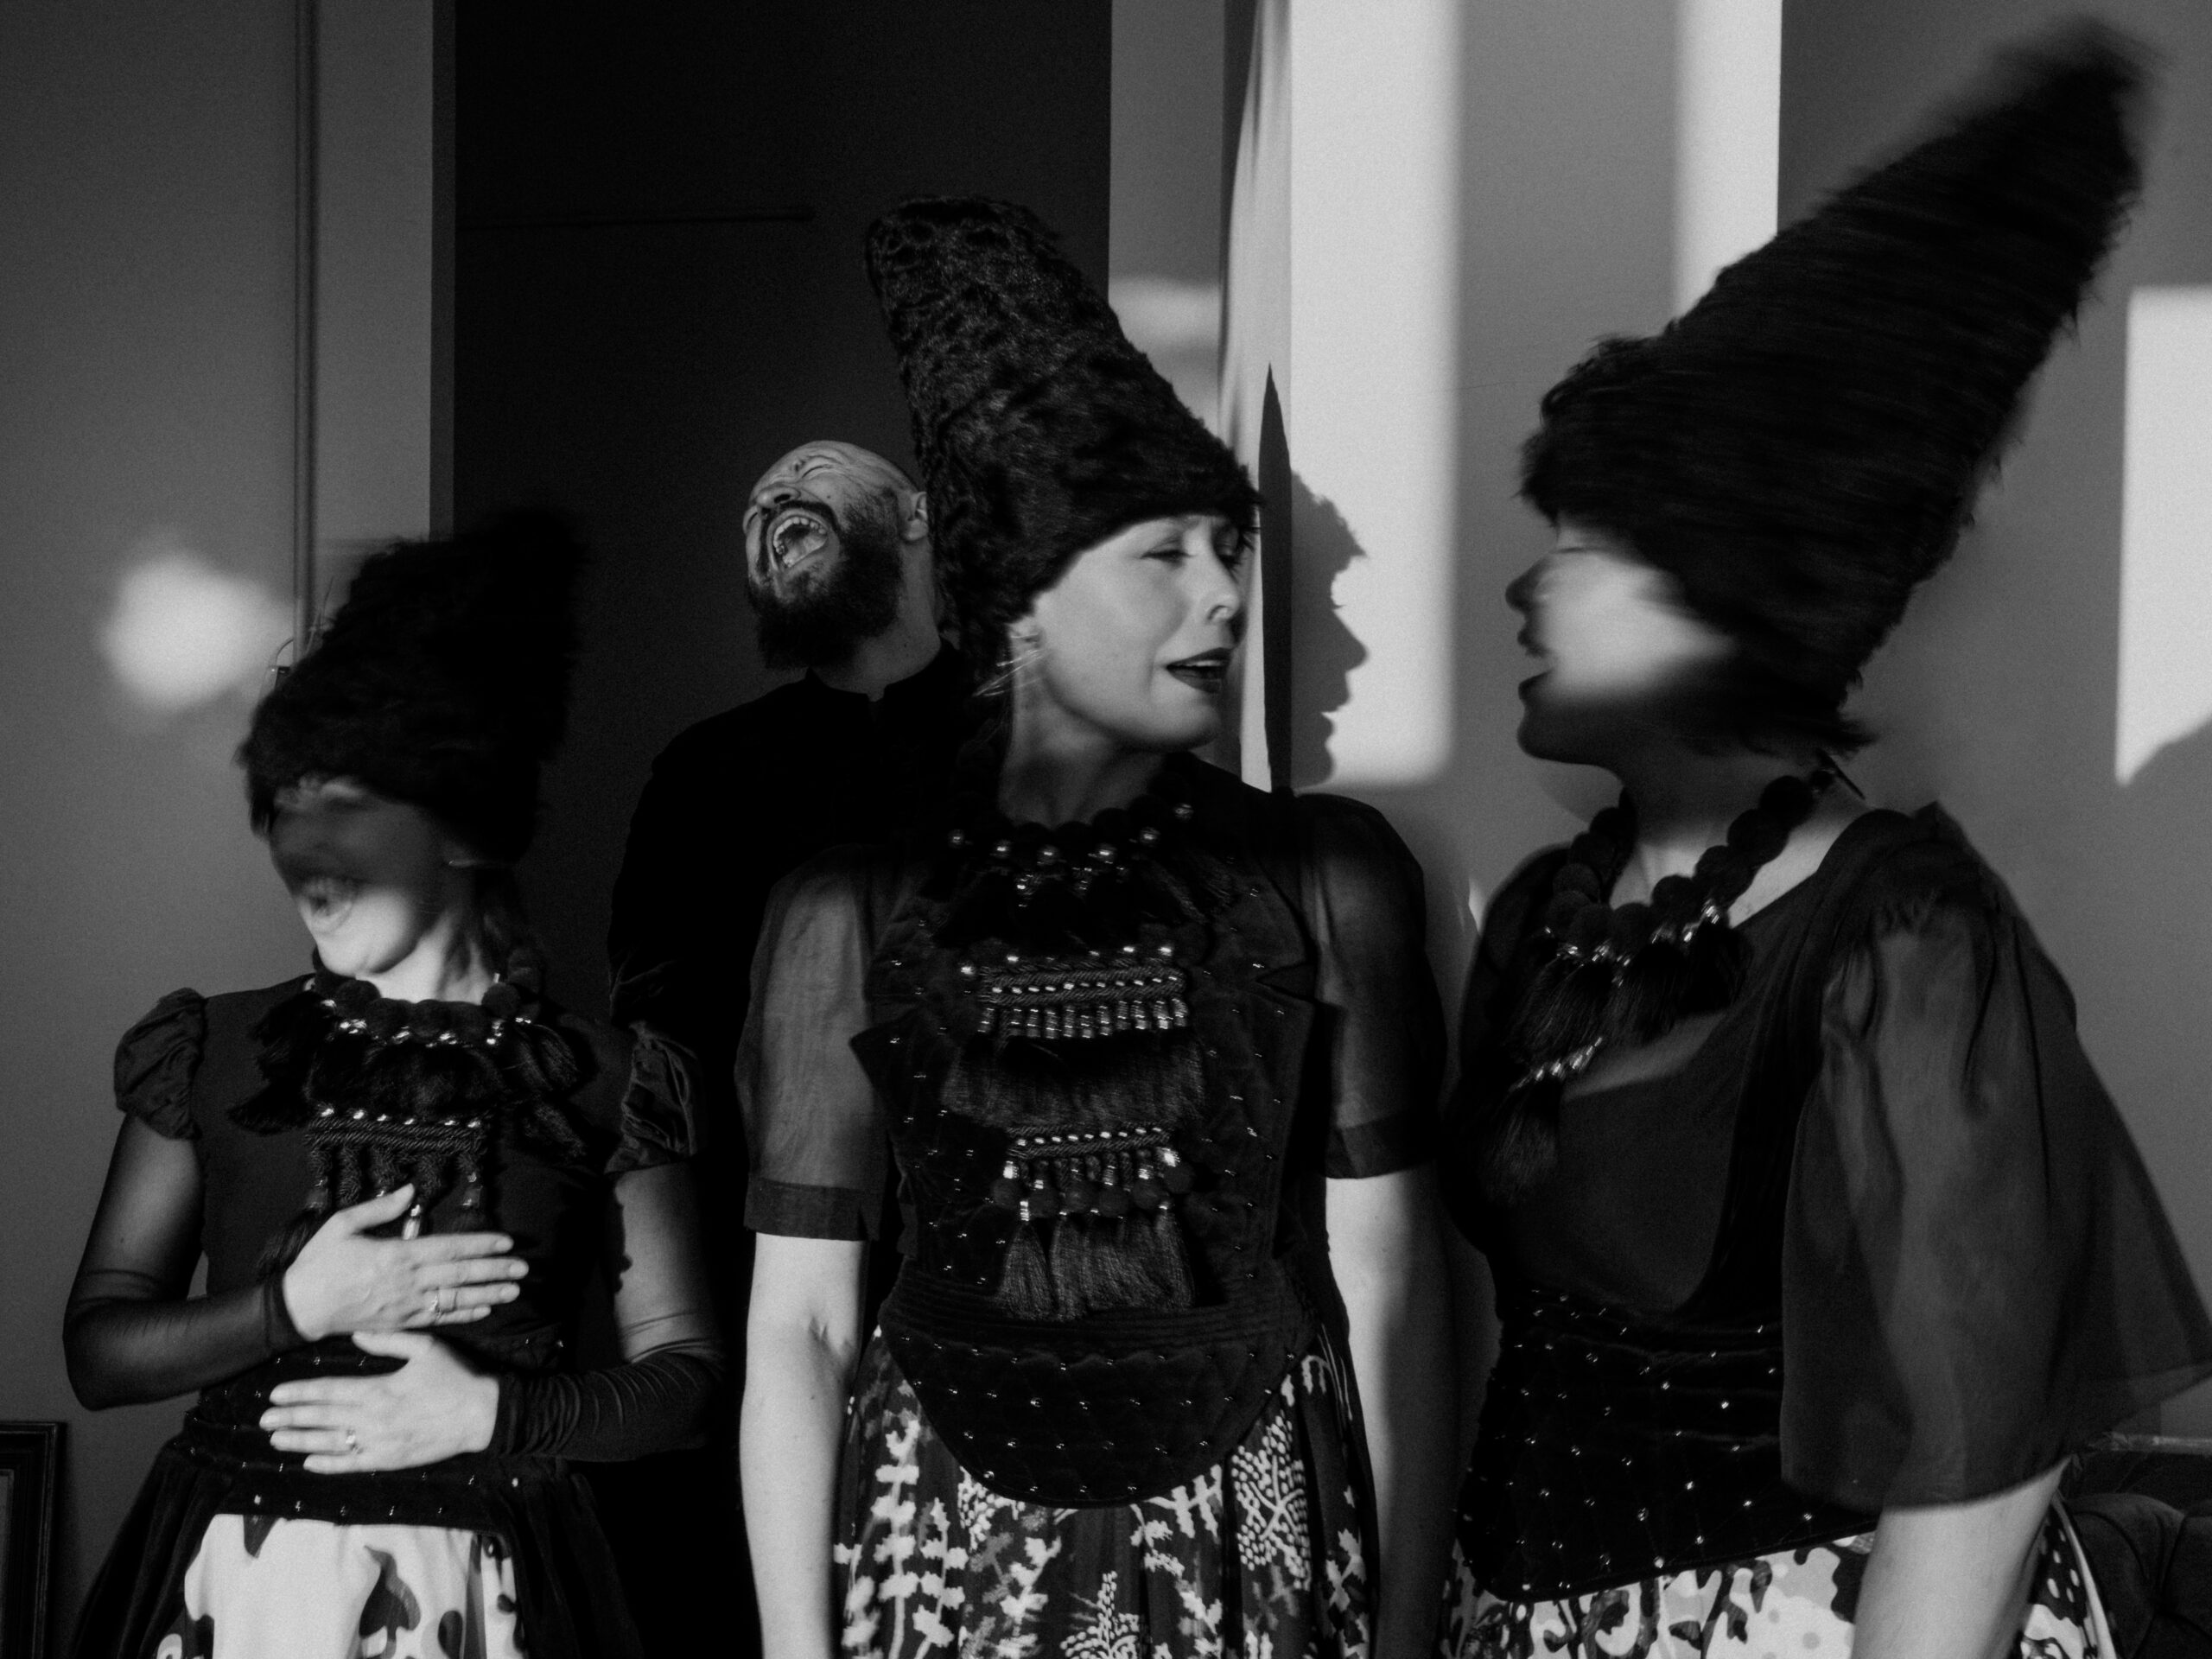 DakhaBrakha band in motion, black and white photo